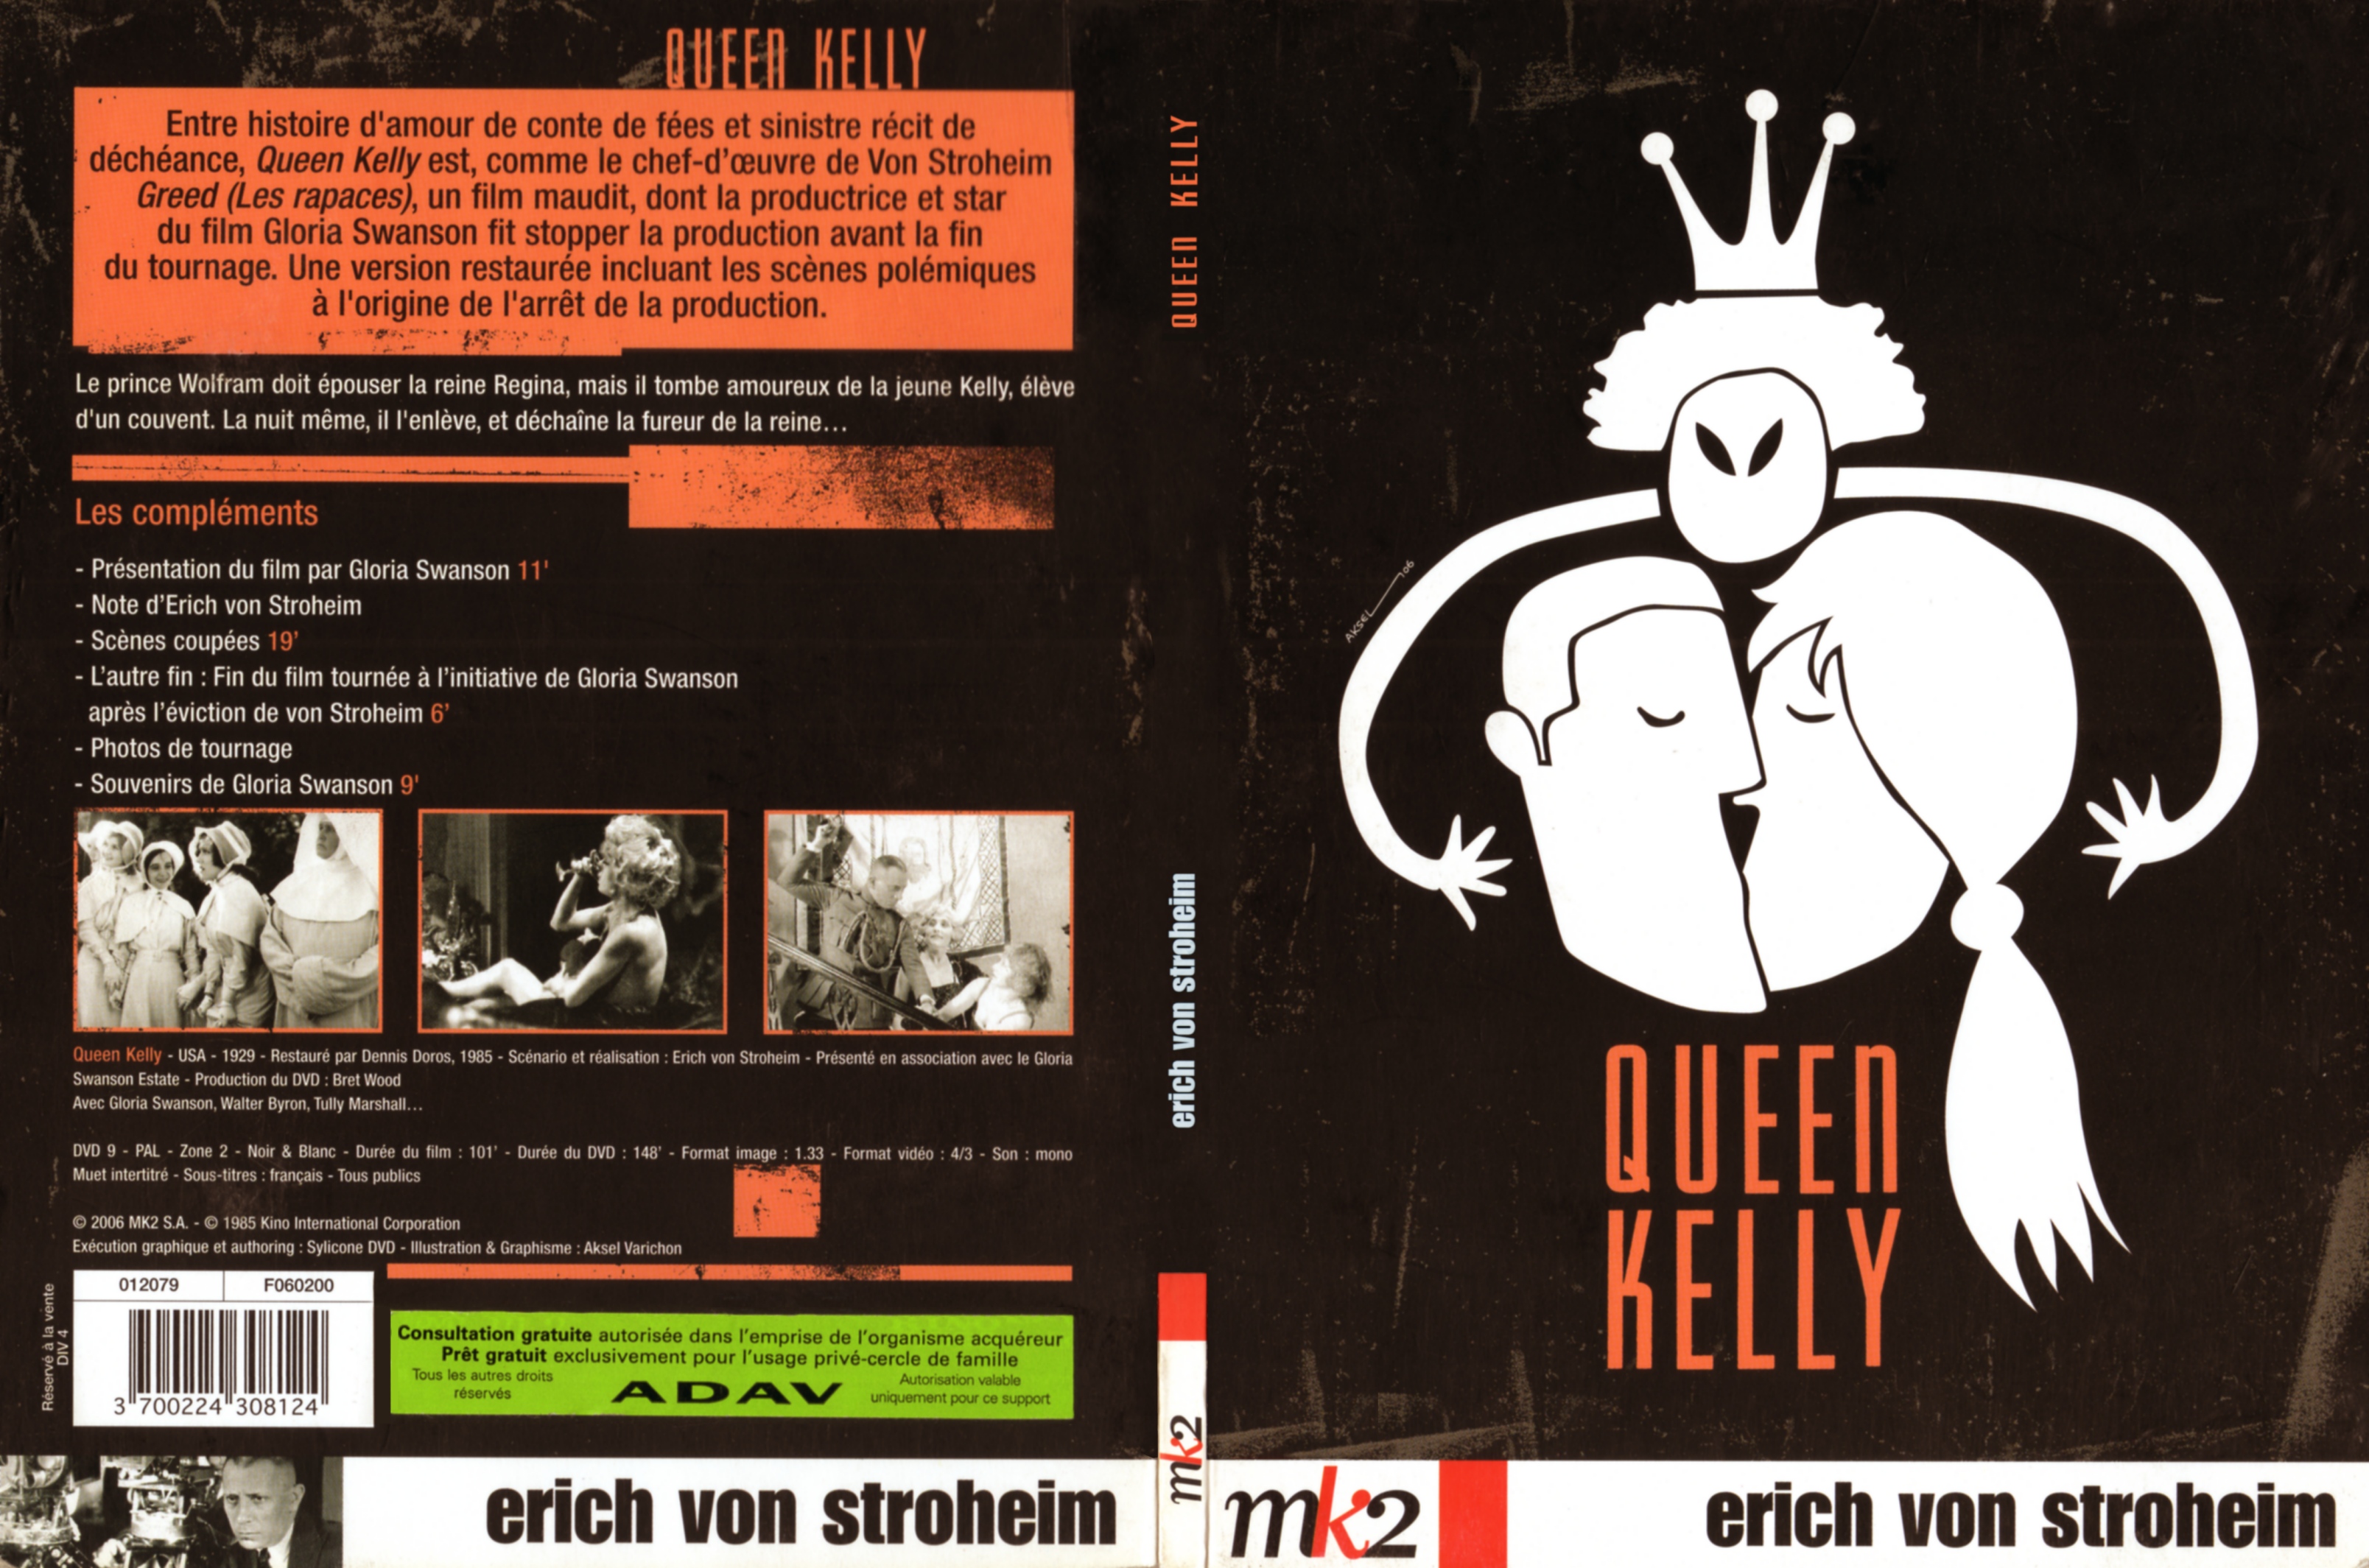 Jaquette DVD Queen Kelly